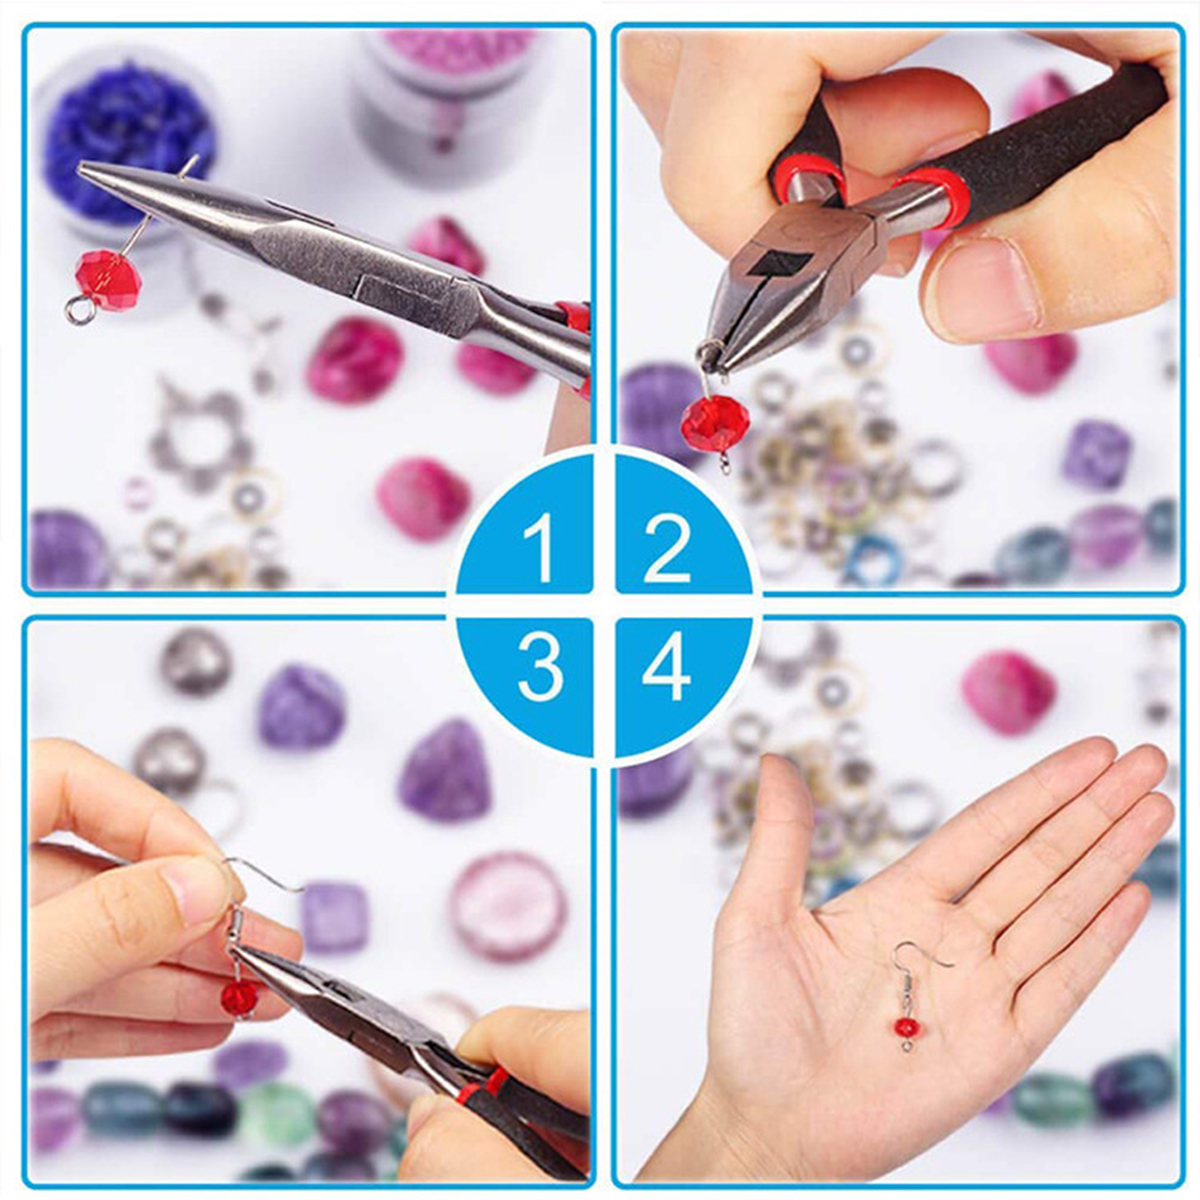 Necklace-Bracelet-Earrings-Set-Jewelry-DIY-Making-Kit-Handmade-Jewelry-Making-1735465